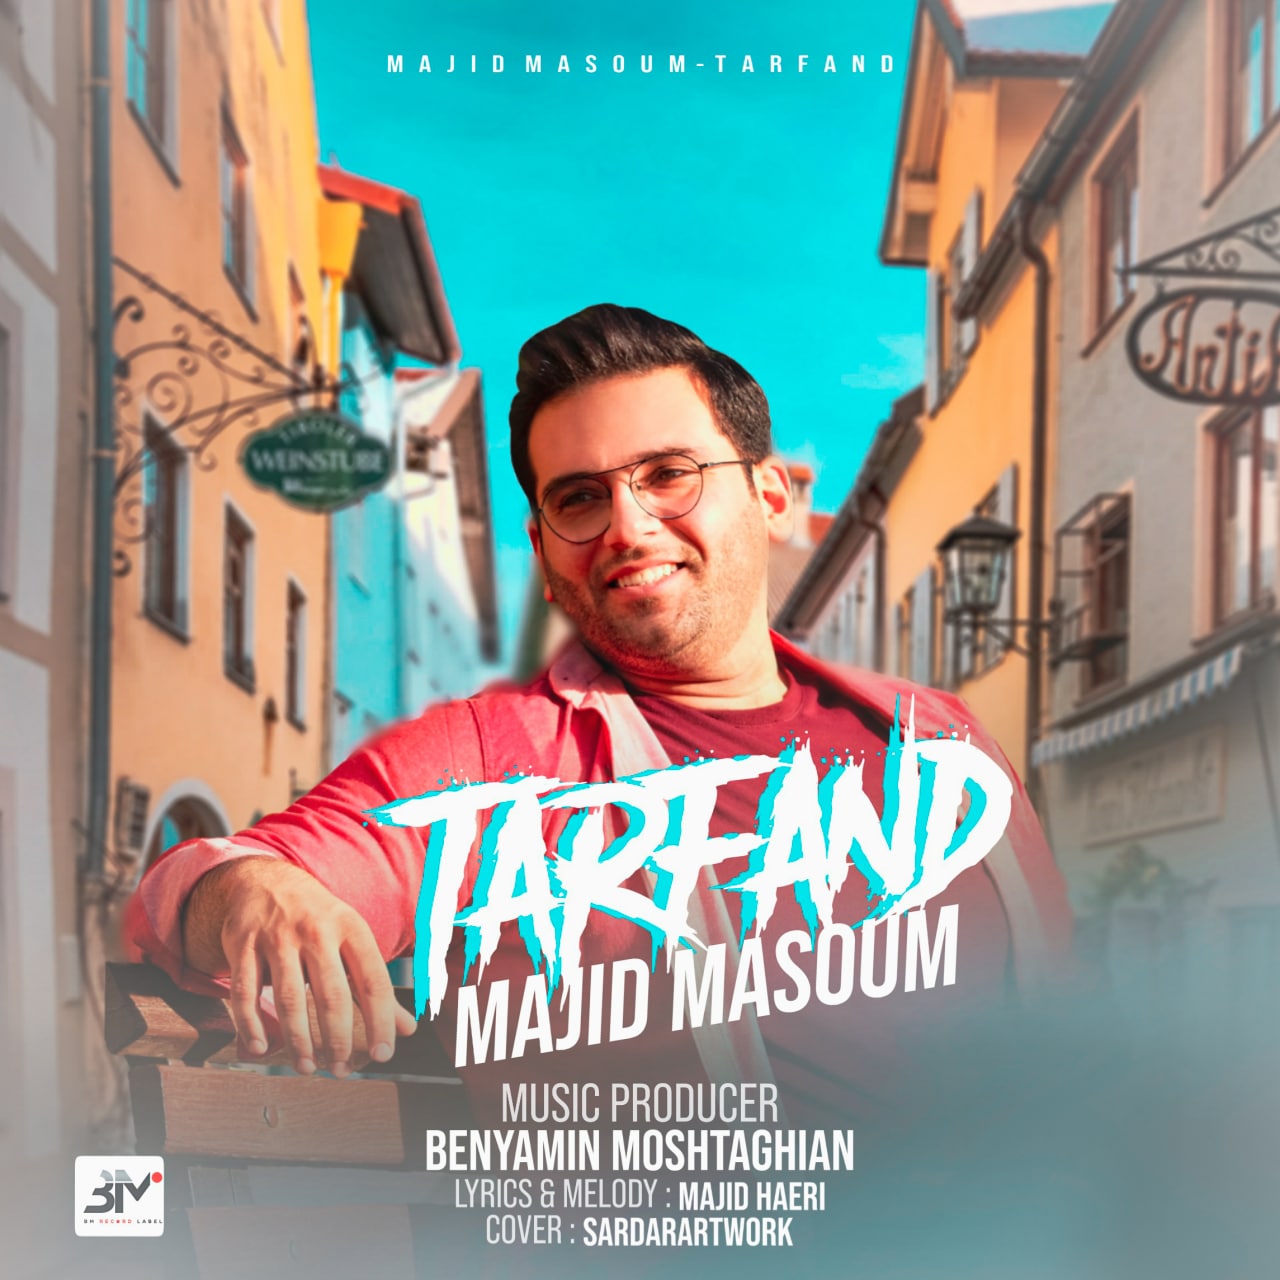 Majid Masoum – Tarfand